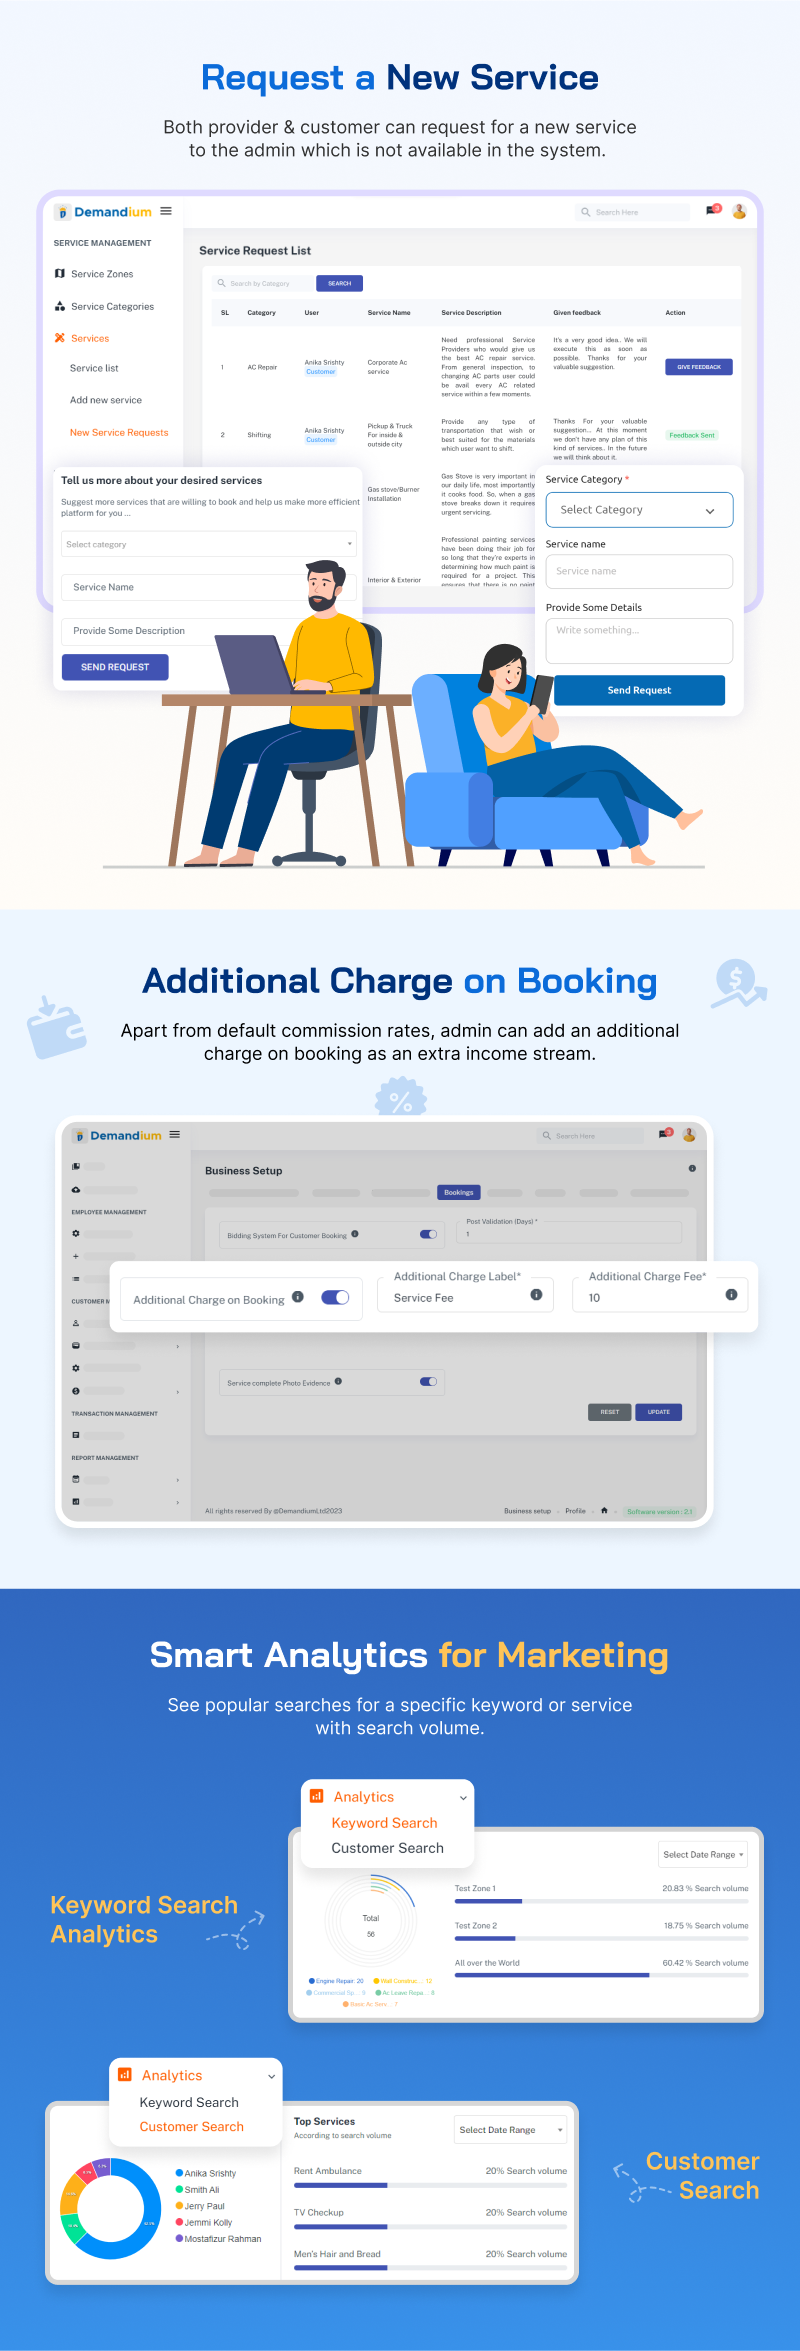 Demandium on-demand booking service platform